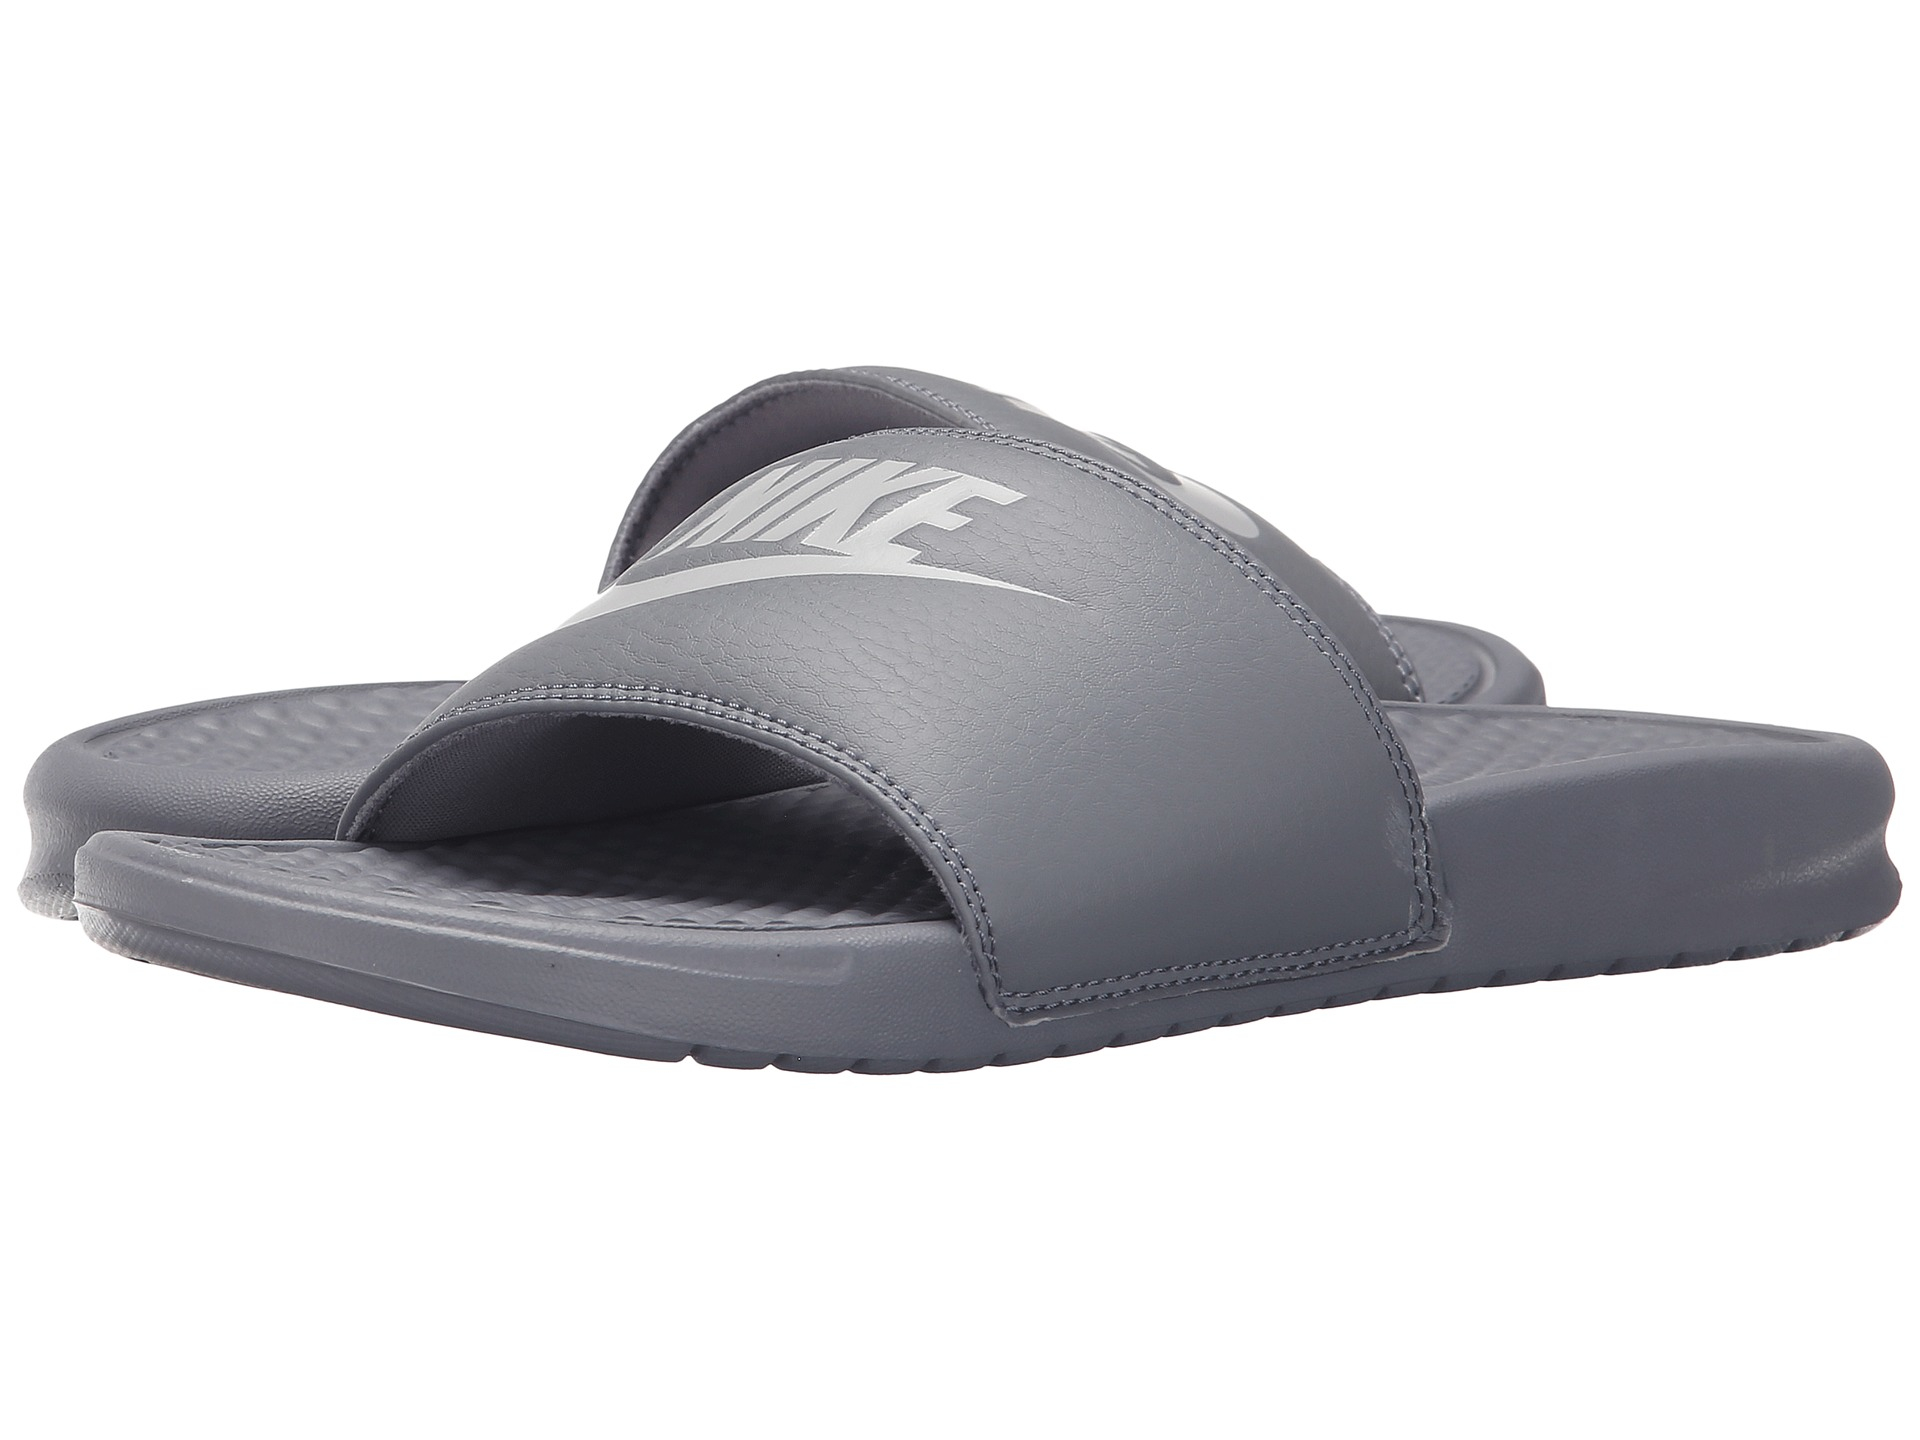 Lyst - Nike Benassi Jdi Slide in Gray